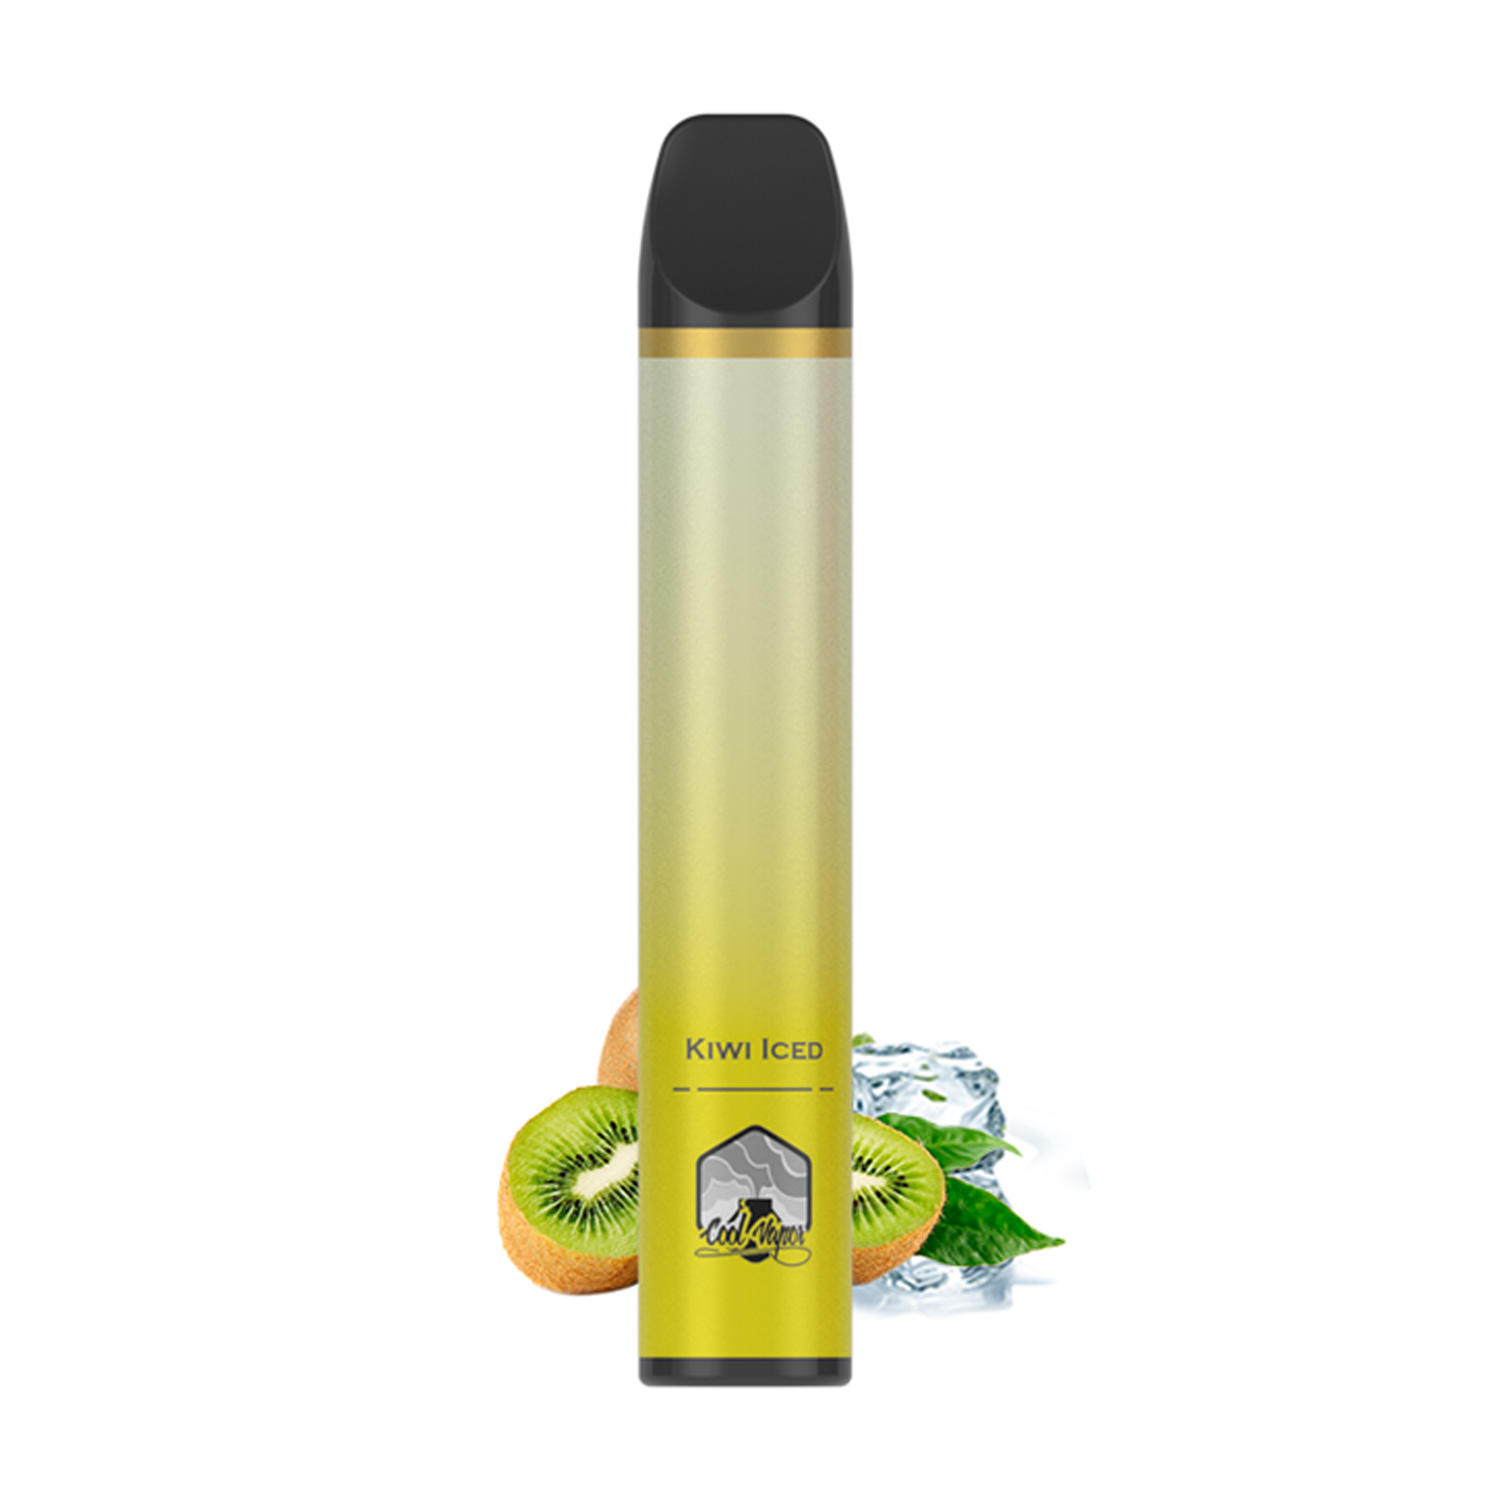 Coolvapor S11-2022 Newest 1500 Puff Bar Disposable Vape Pen Ecig Wholesale Disposable Vape